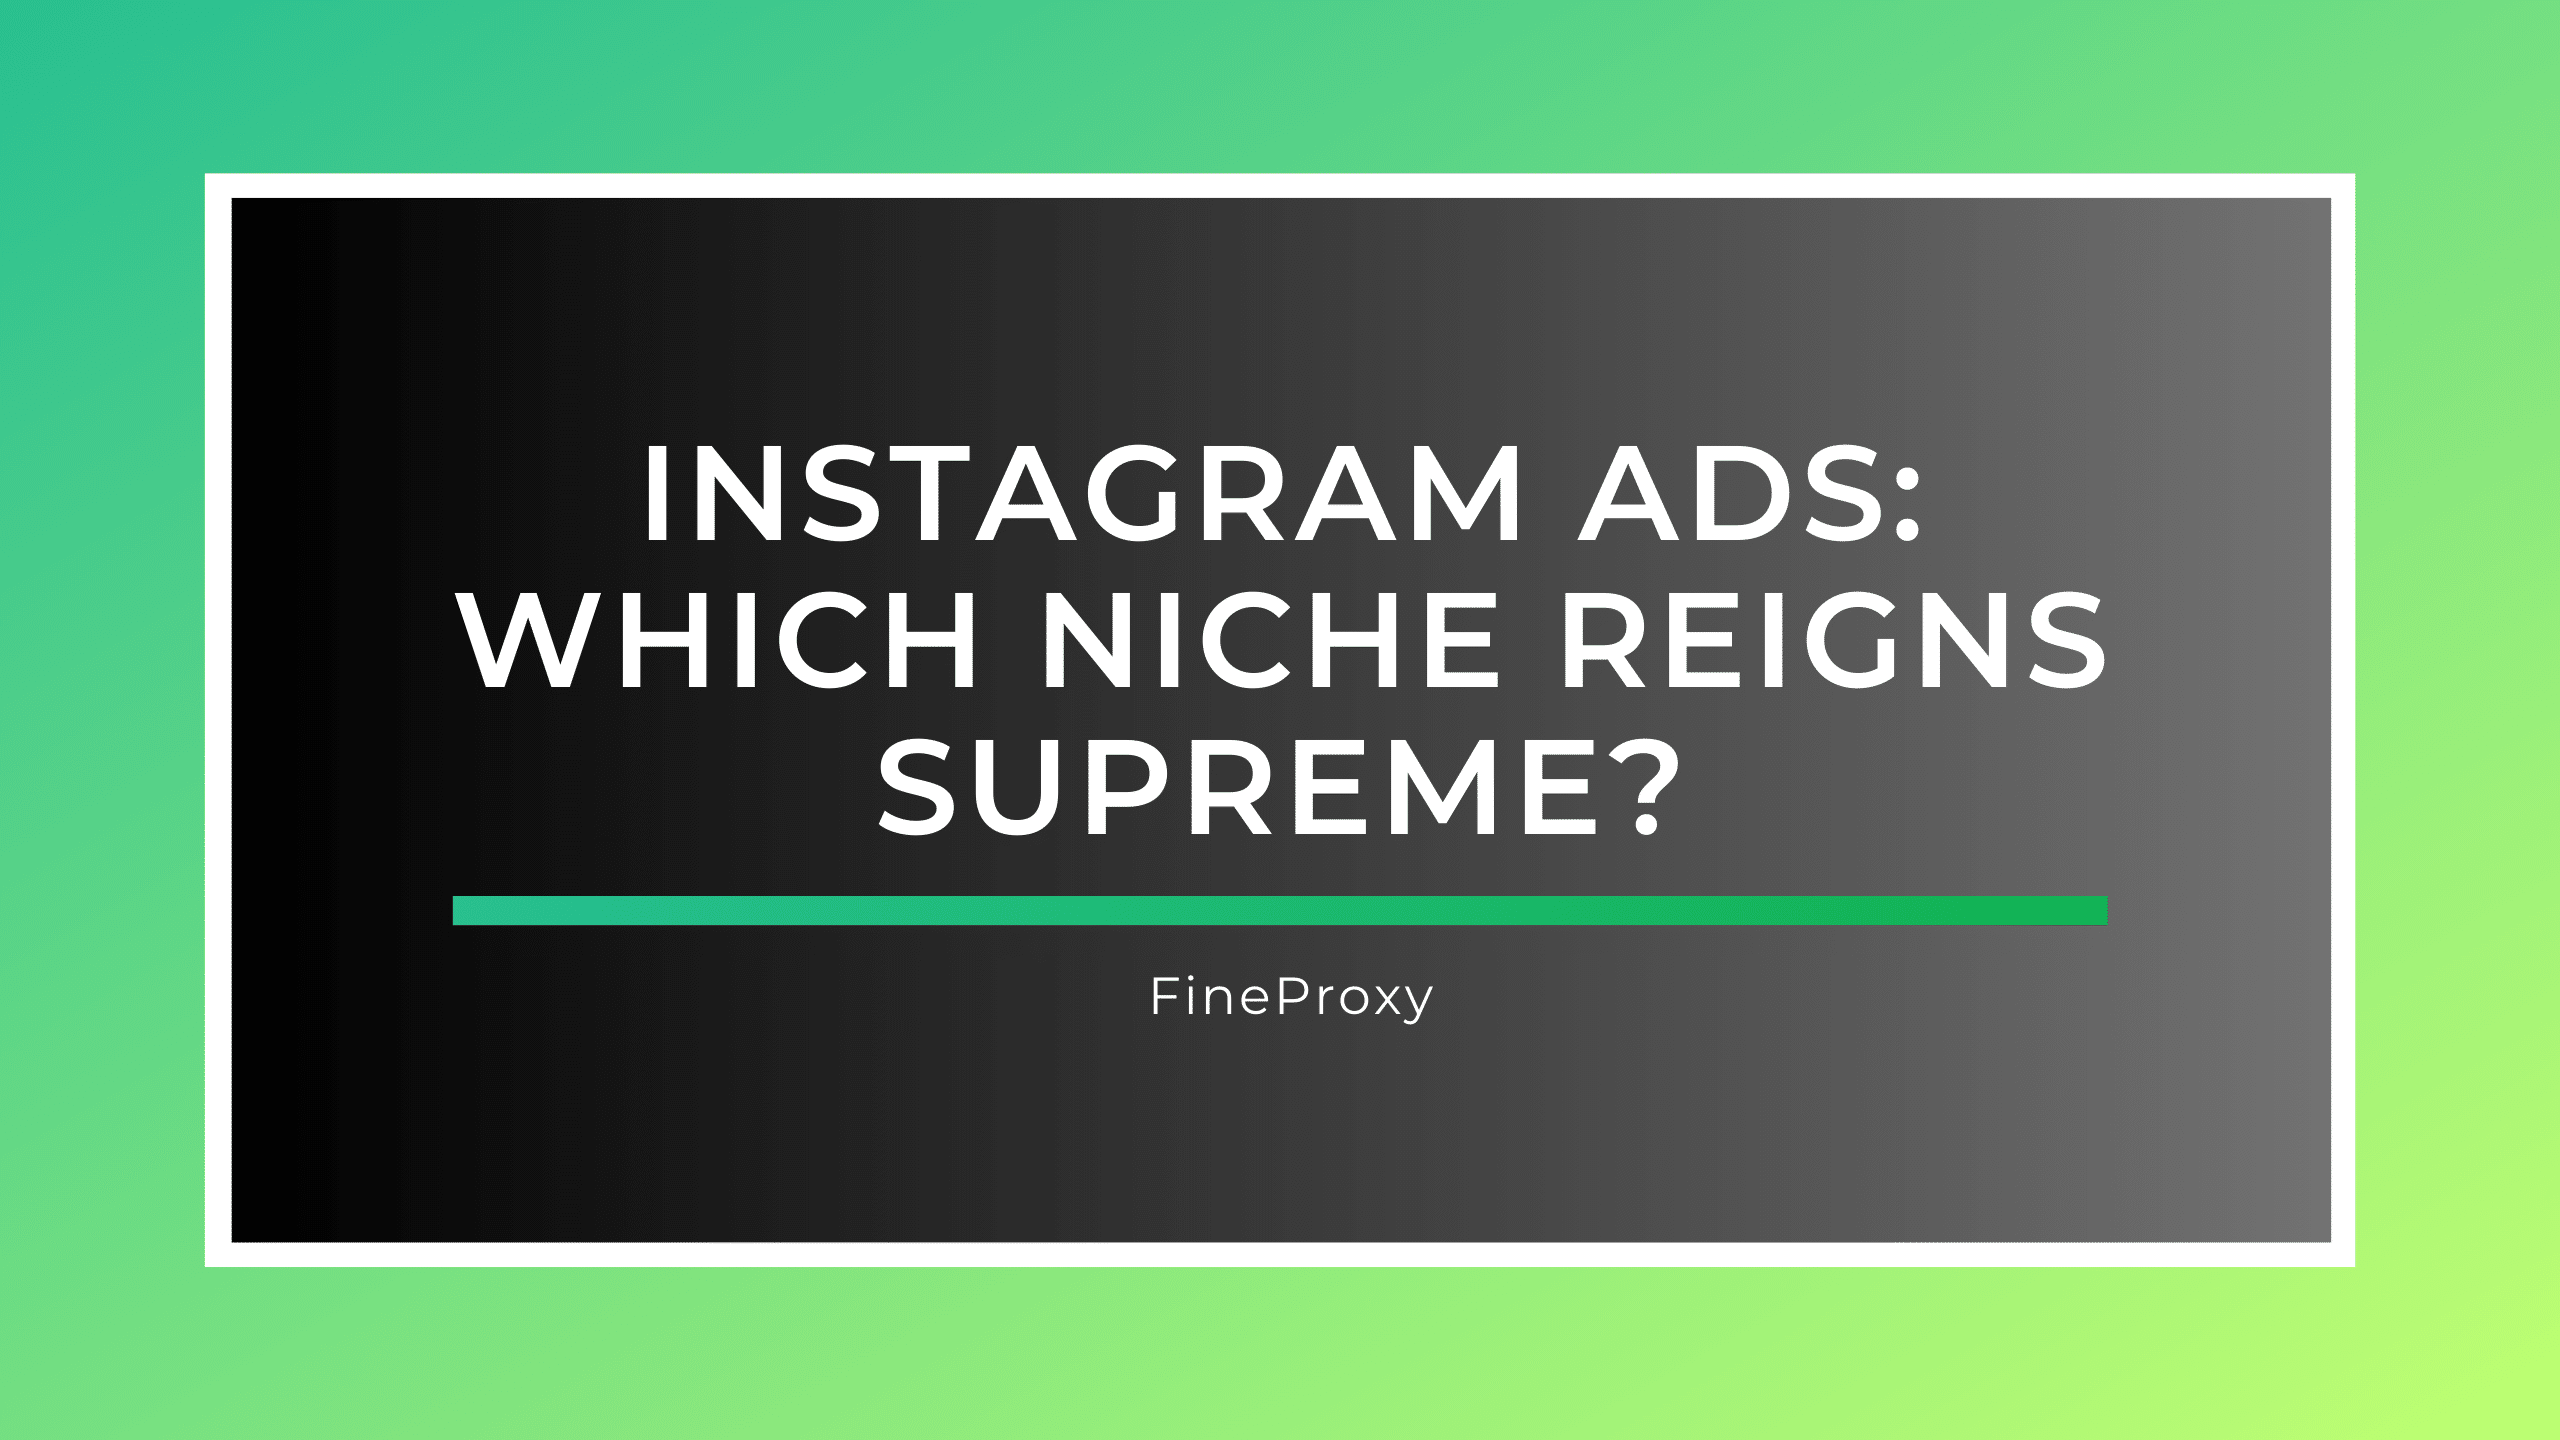 Реклама в Instagram: какая ниша доминирует?